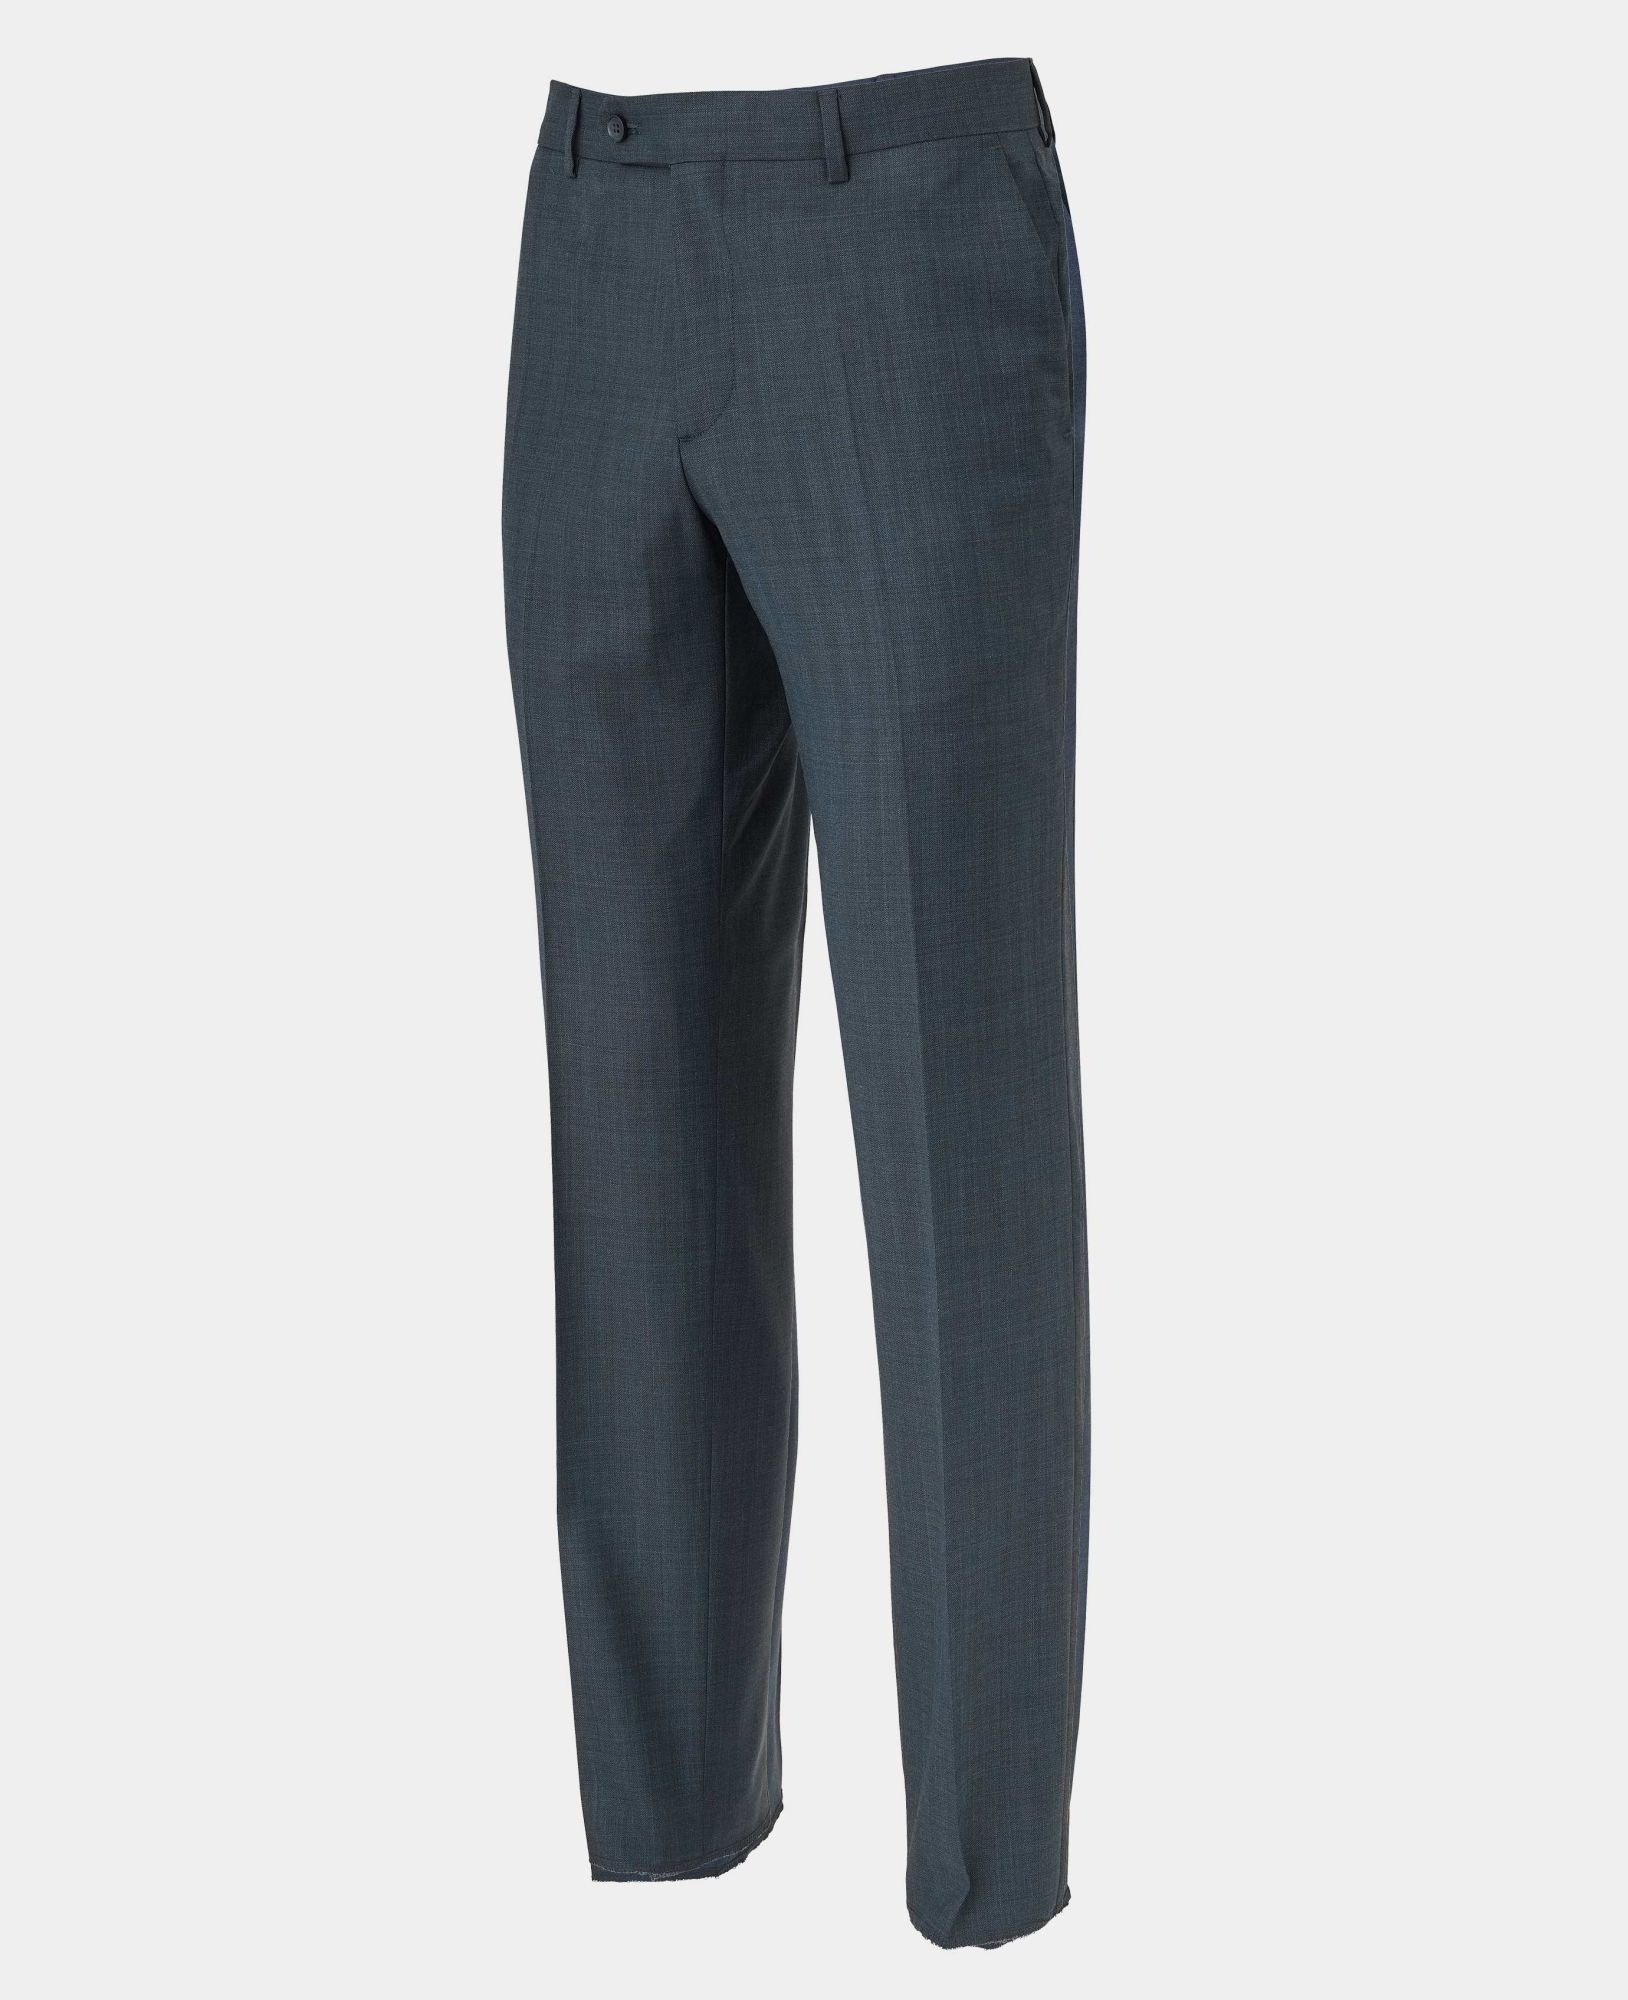 Navy Herringbone Wool-Blend Suit Trousers 42